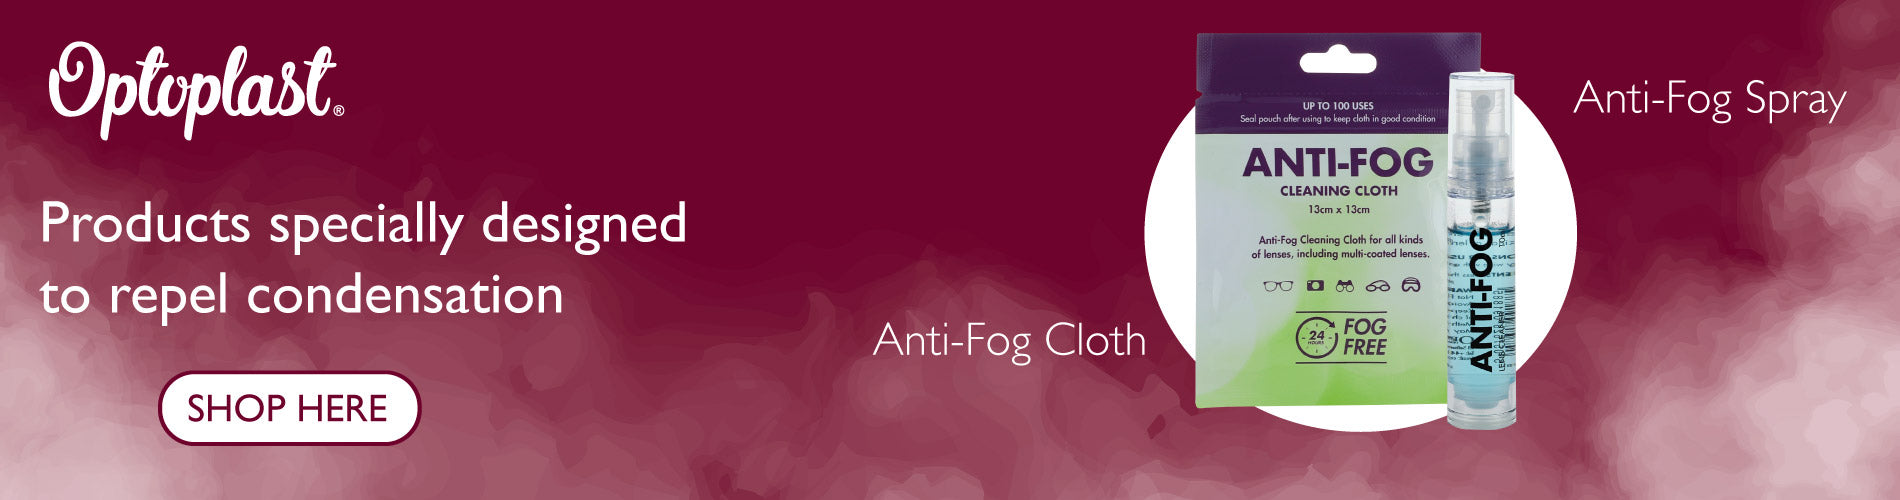 Anti fog banner v1